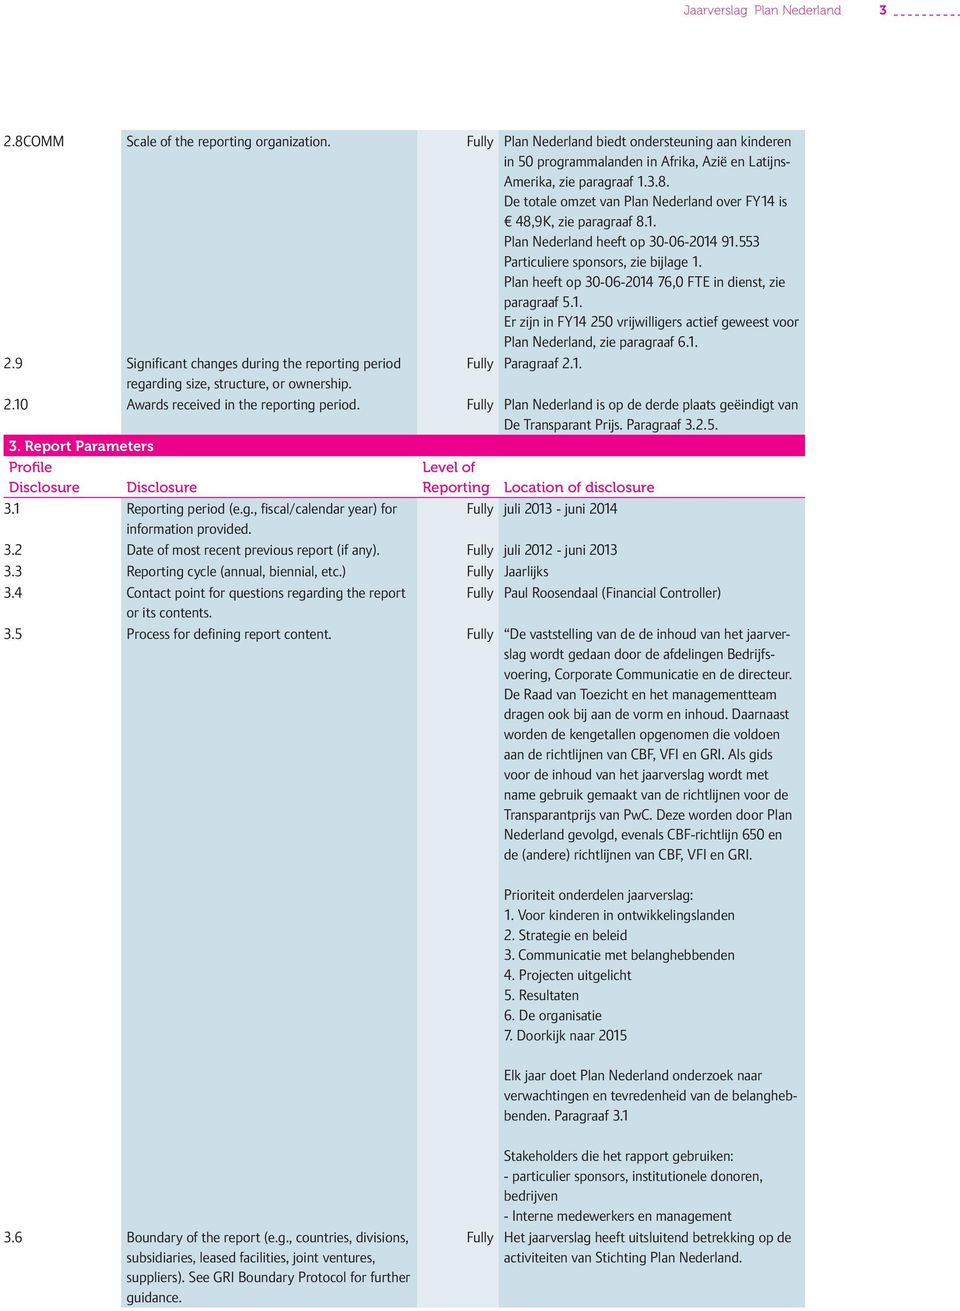 De totale omzet van Plan Nederland over FY14 is 48,9K, zie paragraaf 8.1. Plan Nederland heeft op 30-06-2014 91.553 Particuliere sponsors, zie bijlage 1.